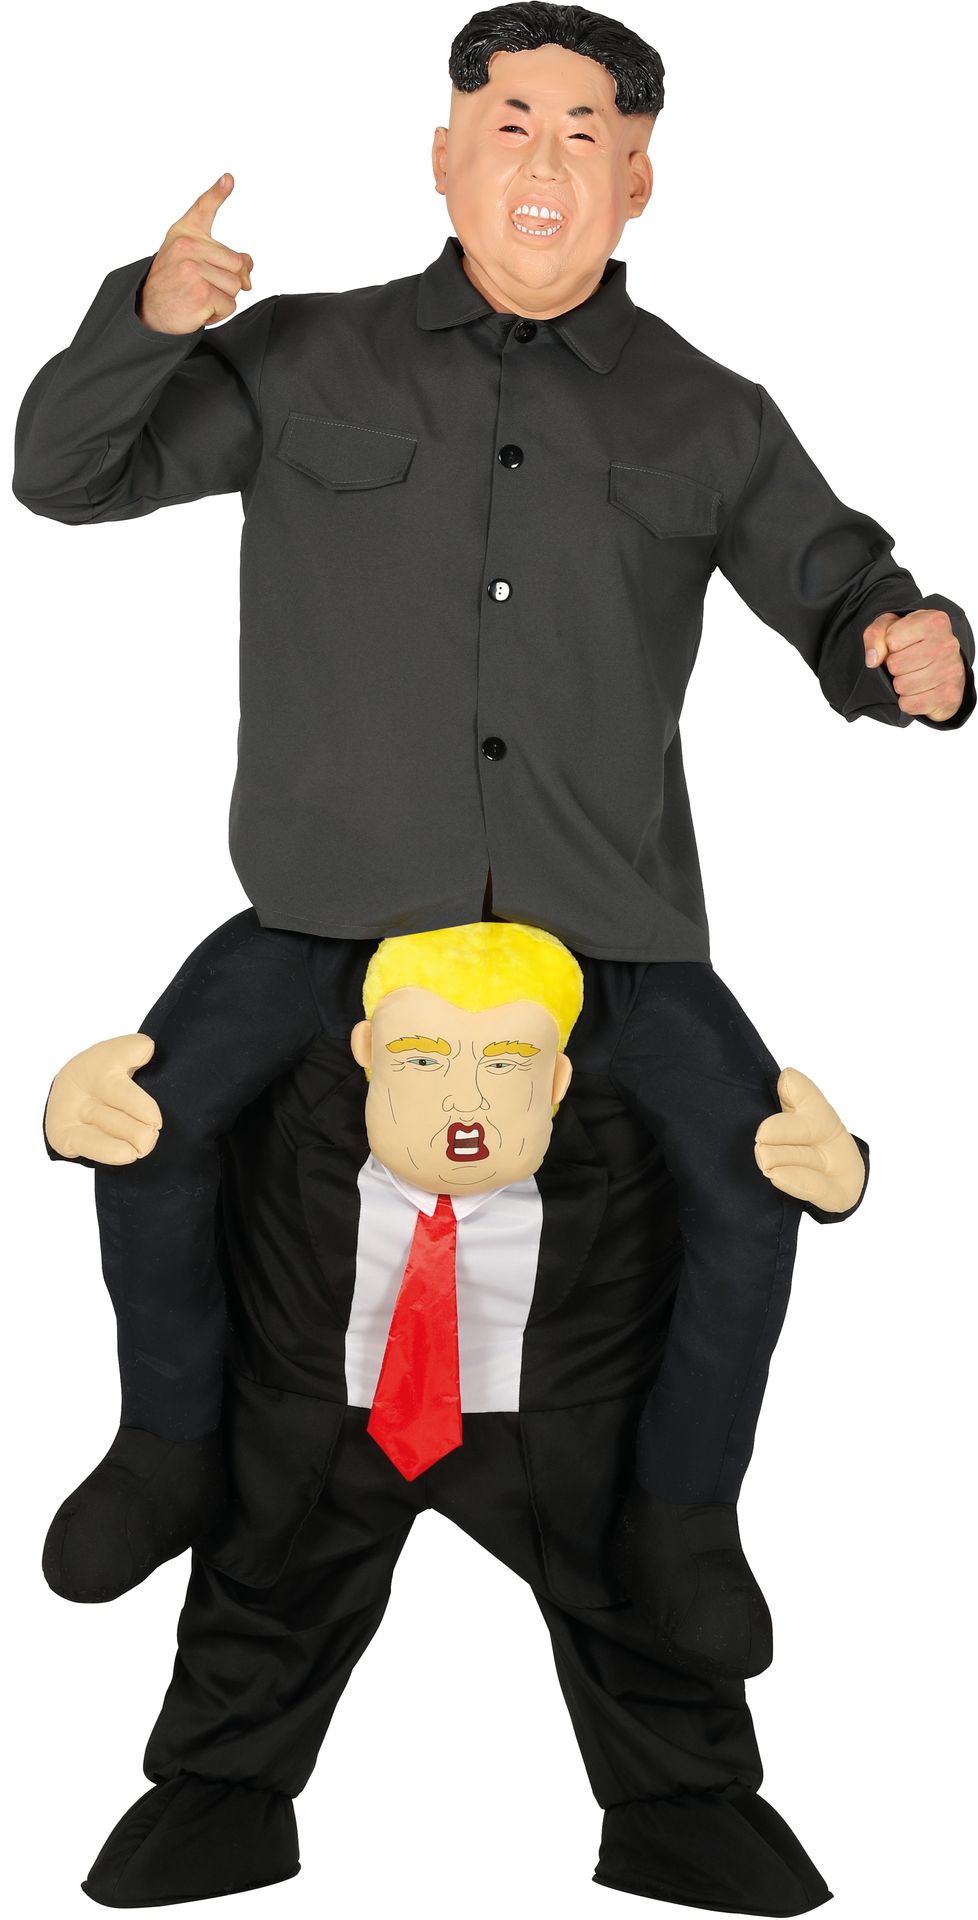 Trump - Kim Jung Un carry me